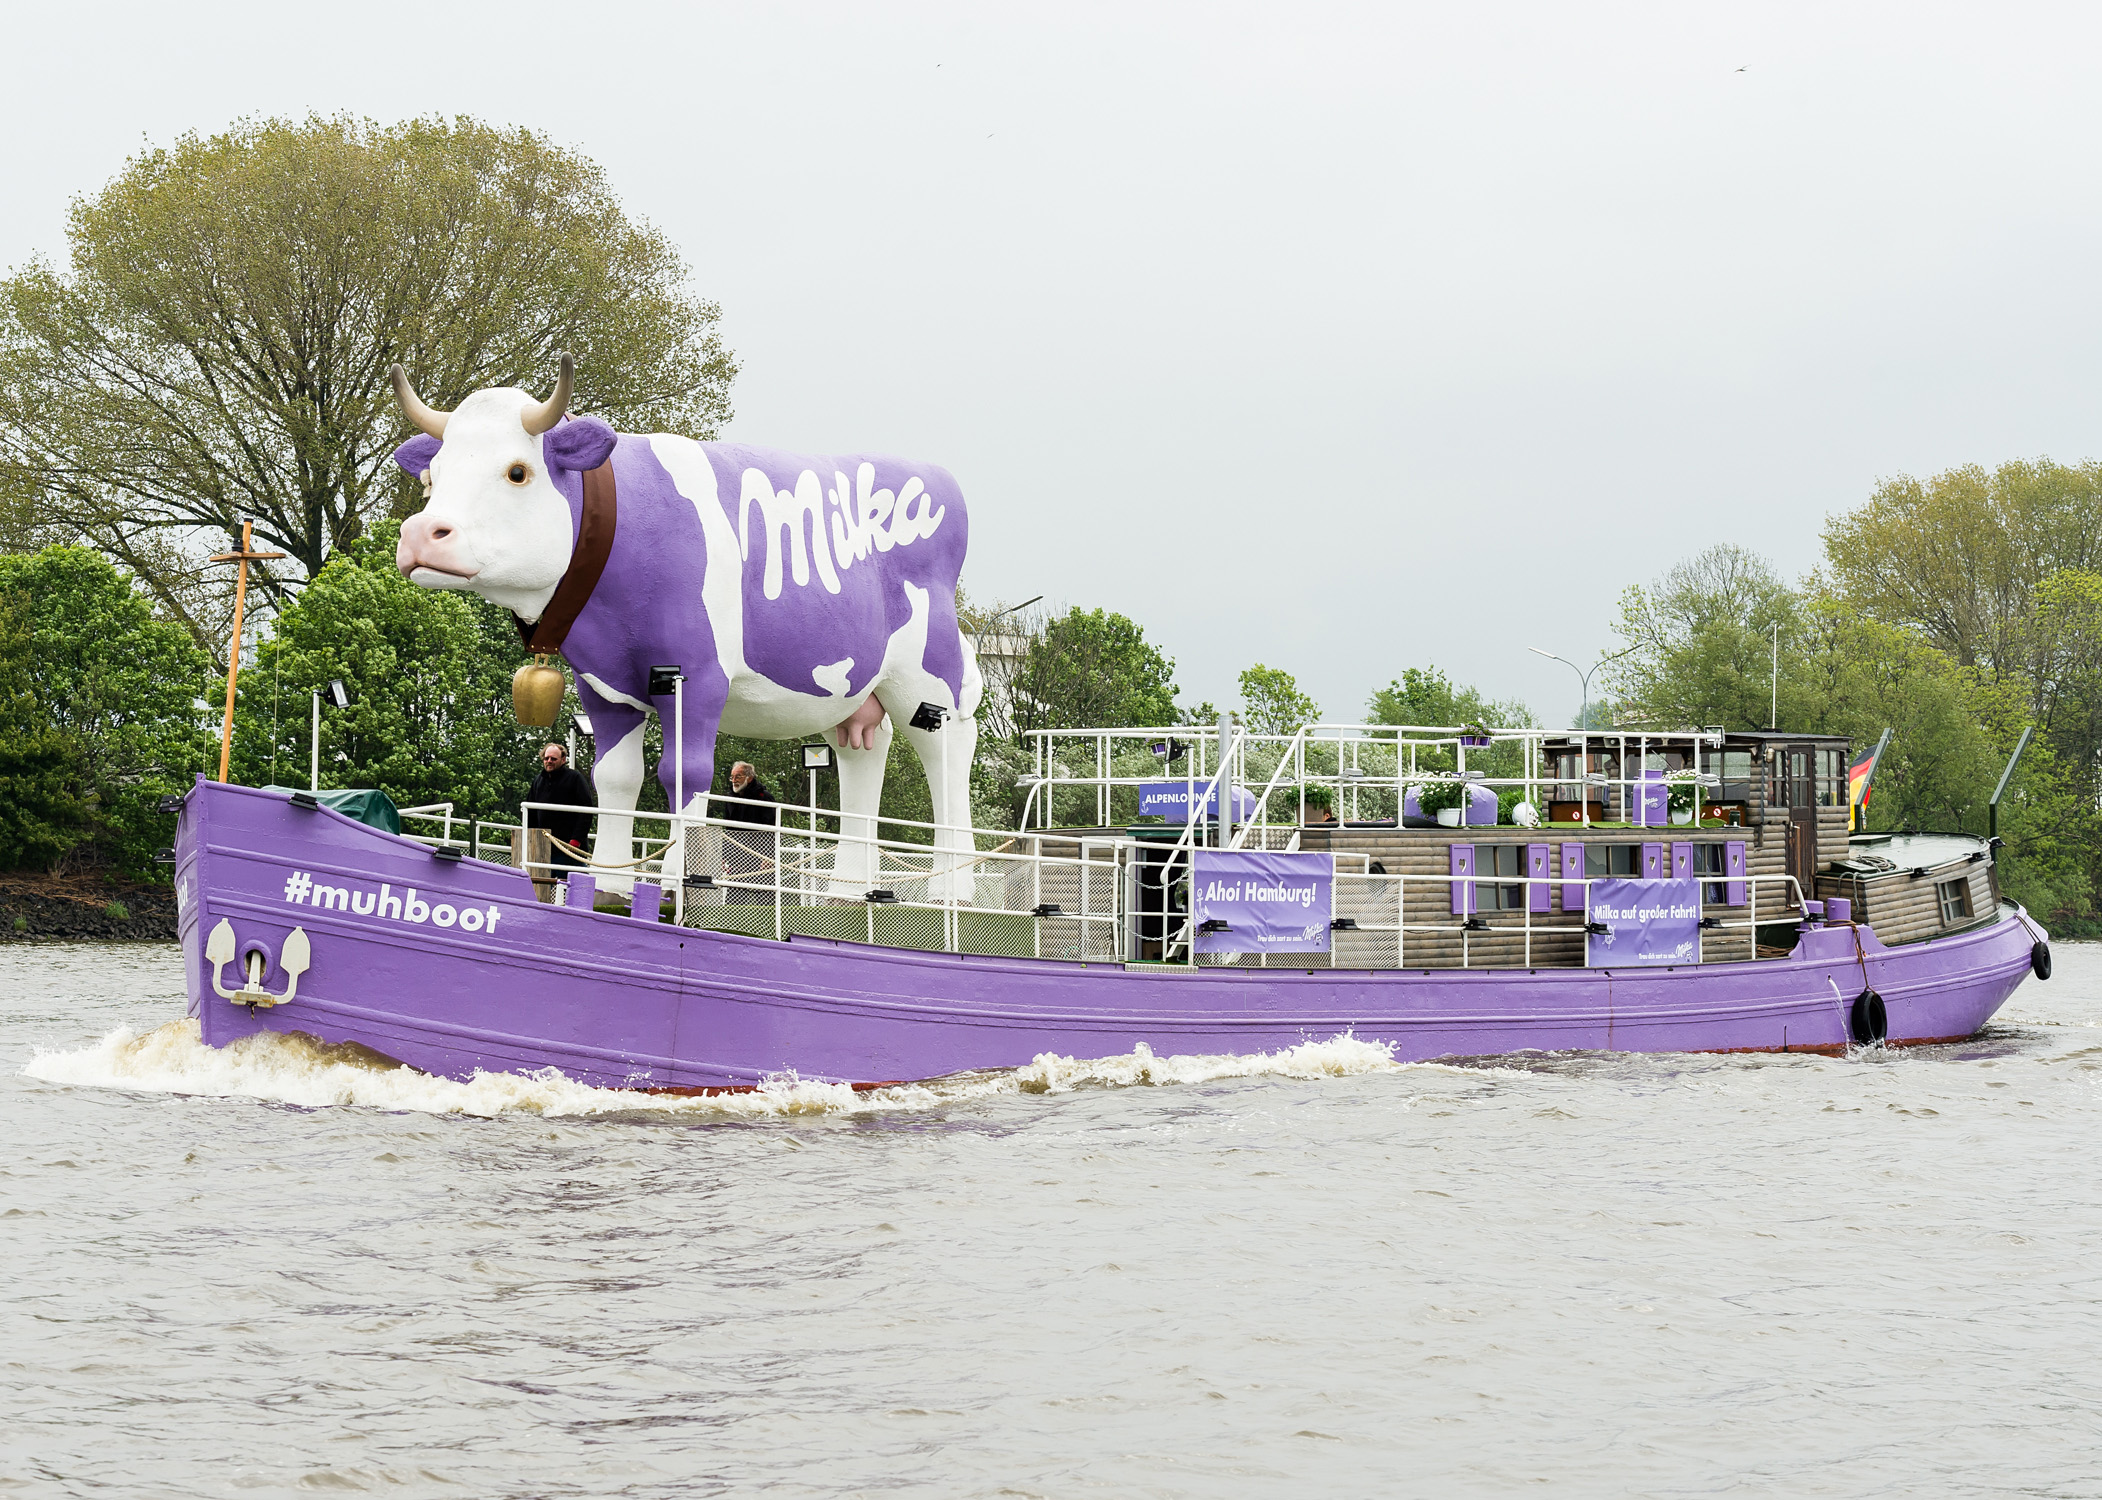 Milka Kuh schwimmt auf dem Rhein nach Düsseldorf Lust